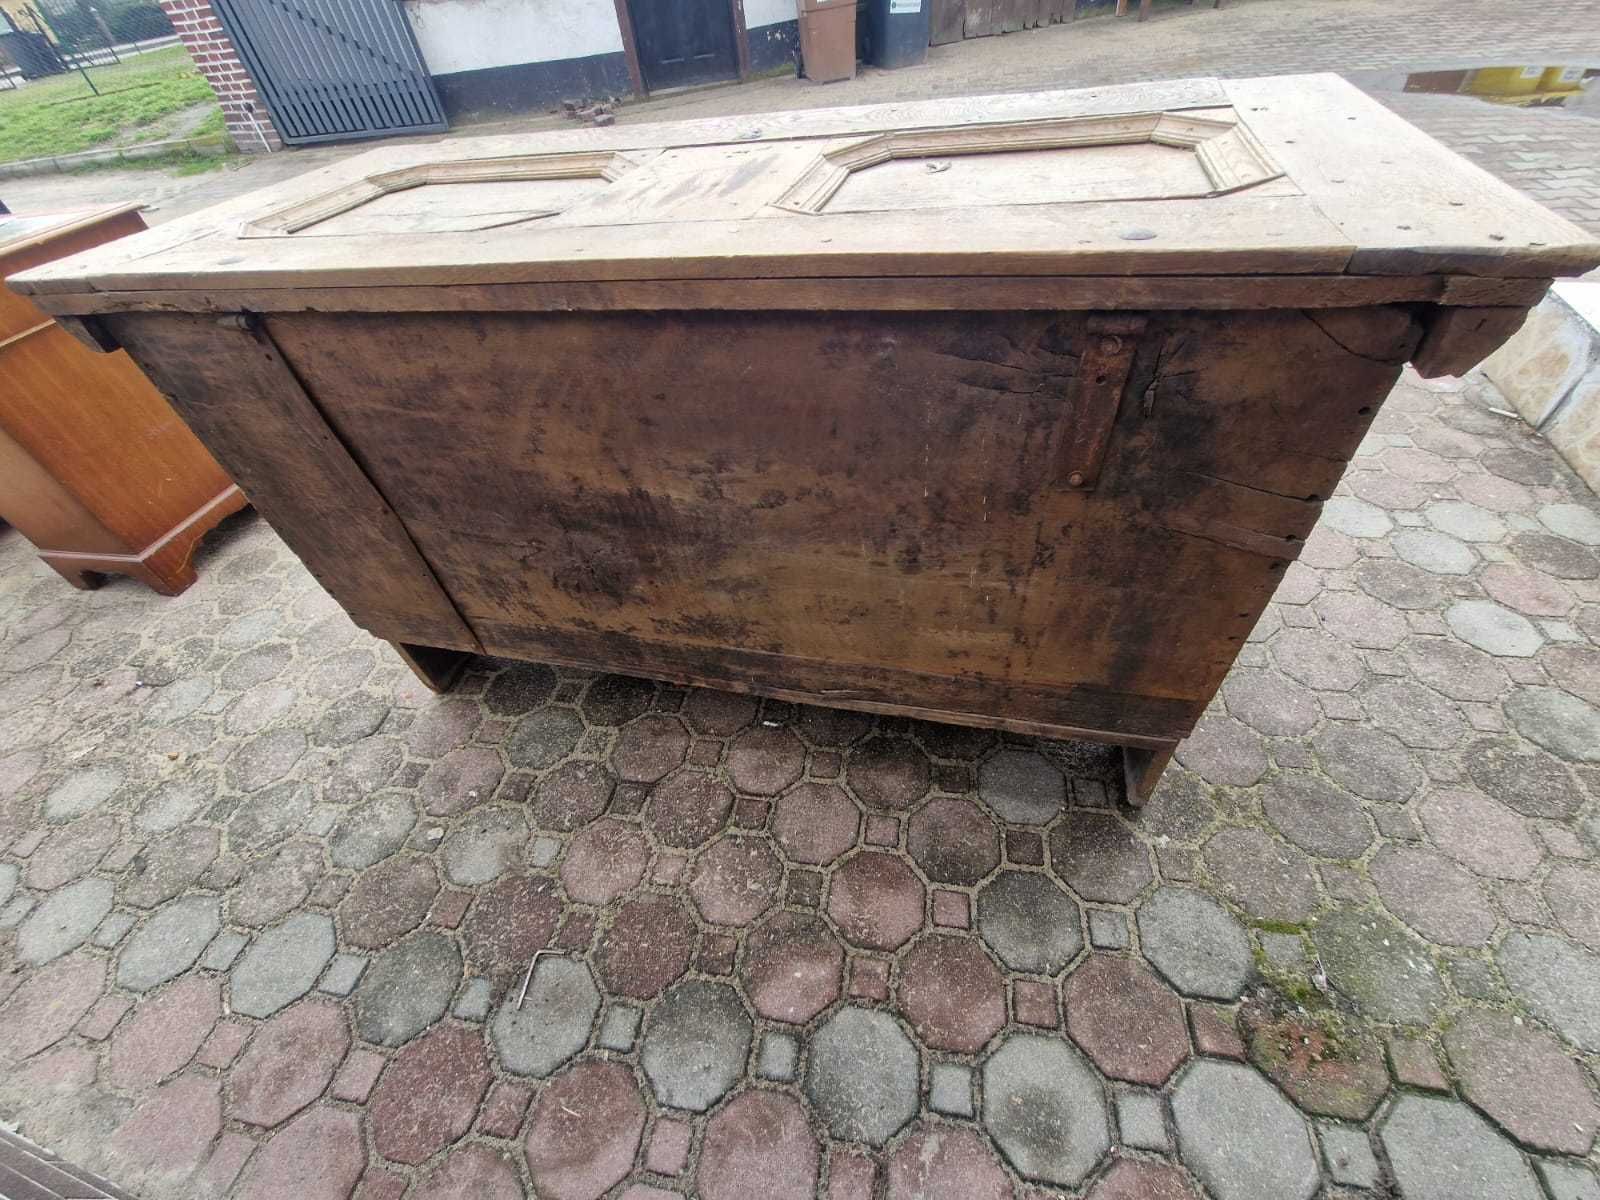 skrzynia antyczna zamkowa drewniana komoda szafa biurko szafka kufer